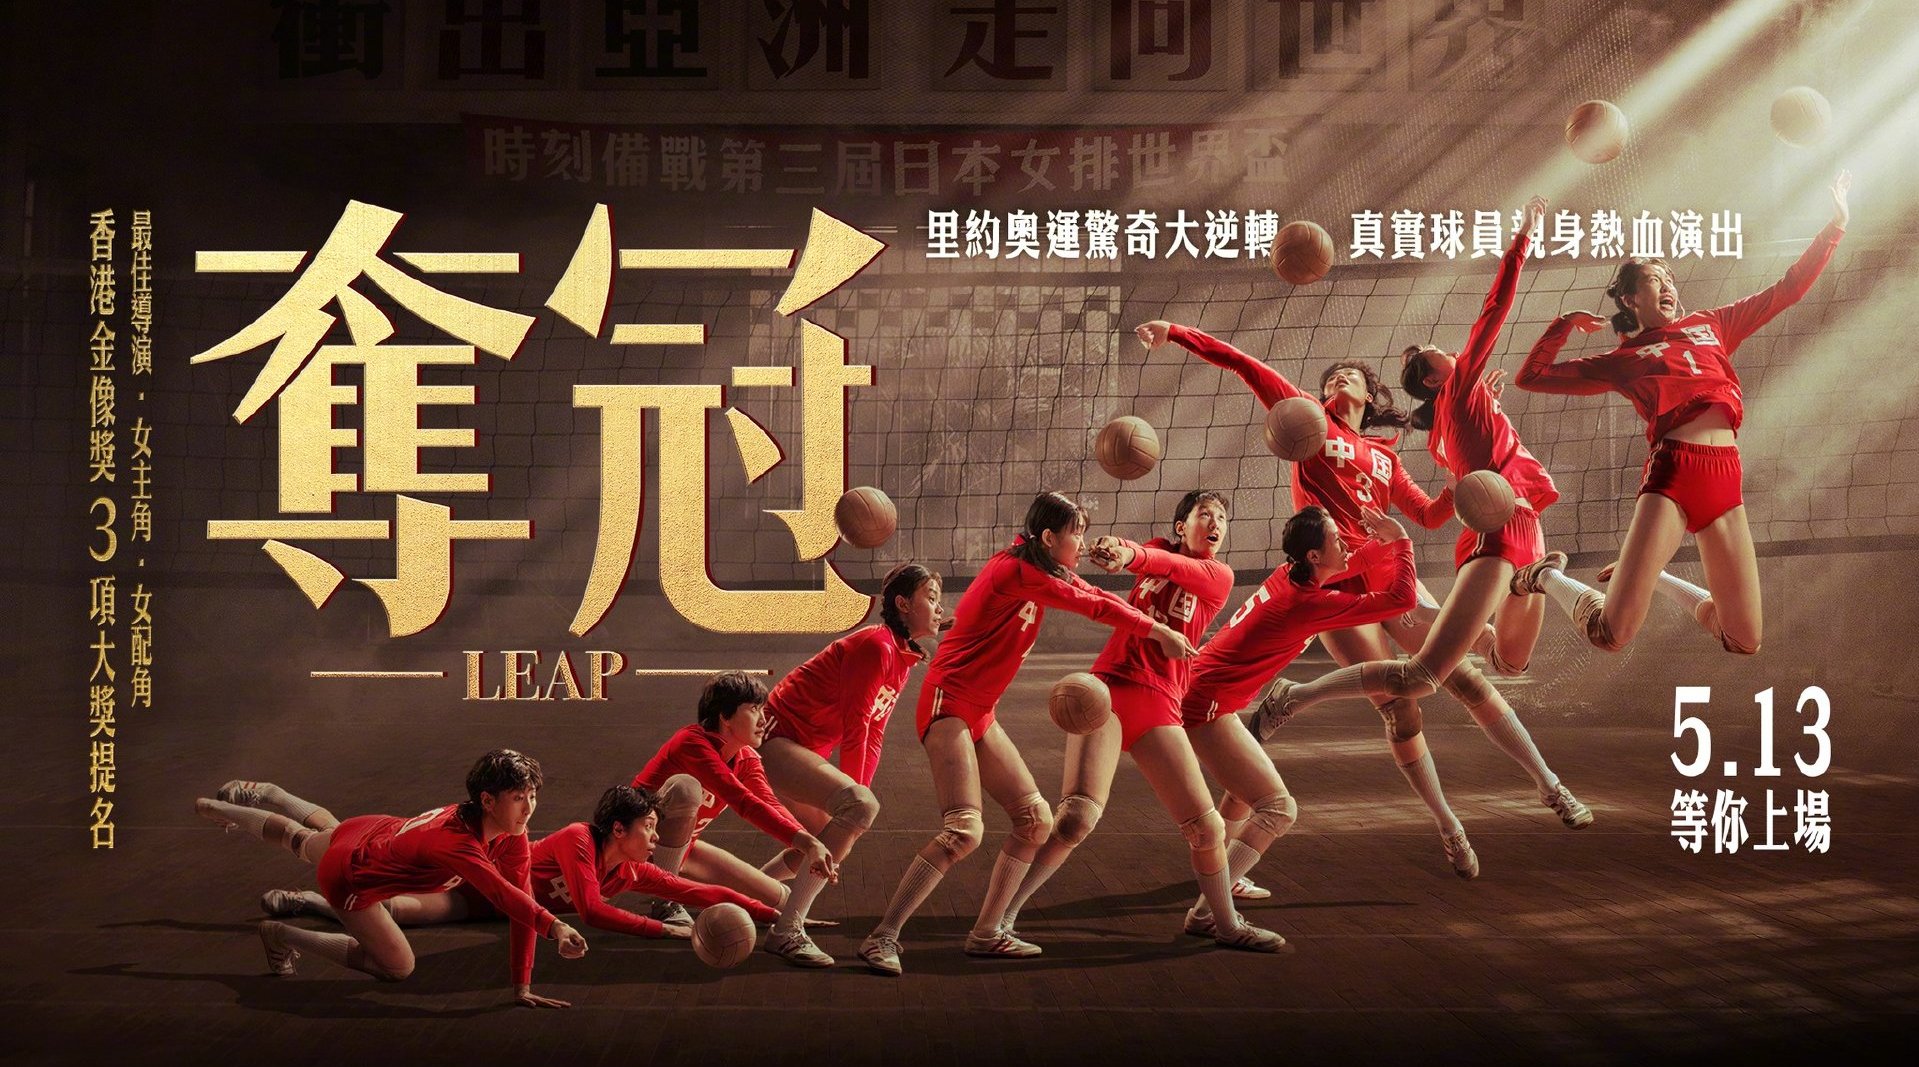 陈可辛执导的电影《夺冠》将于5月13日在中国台湾上映